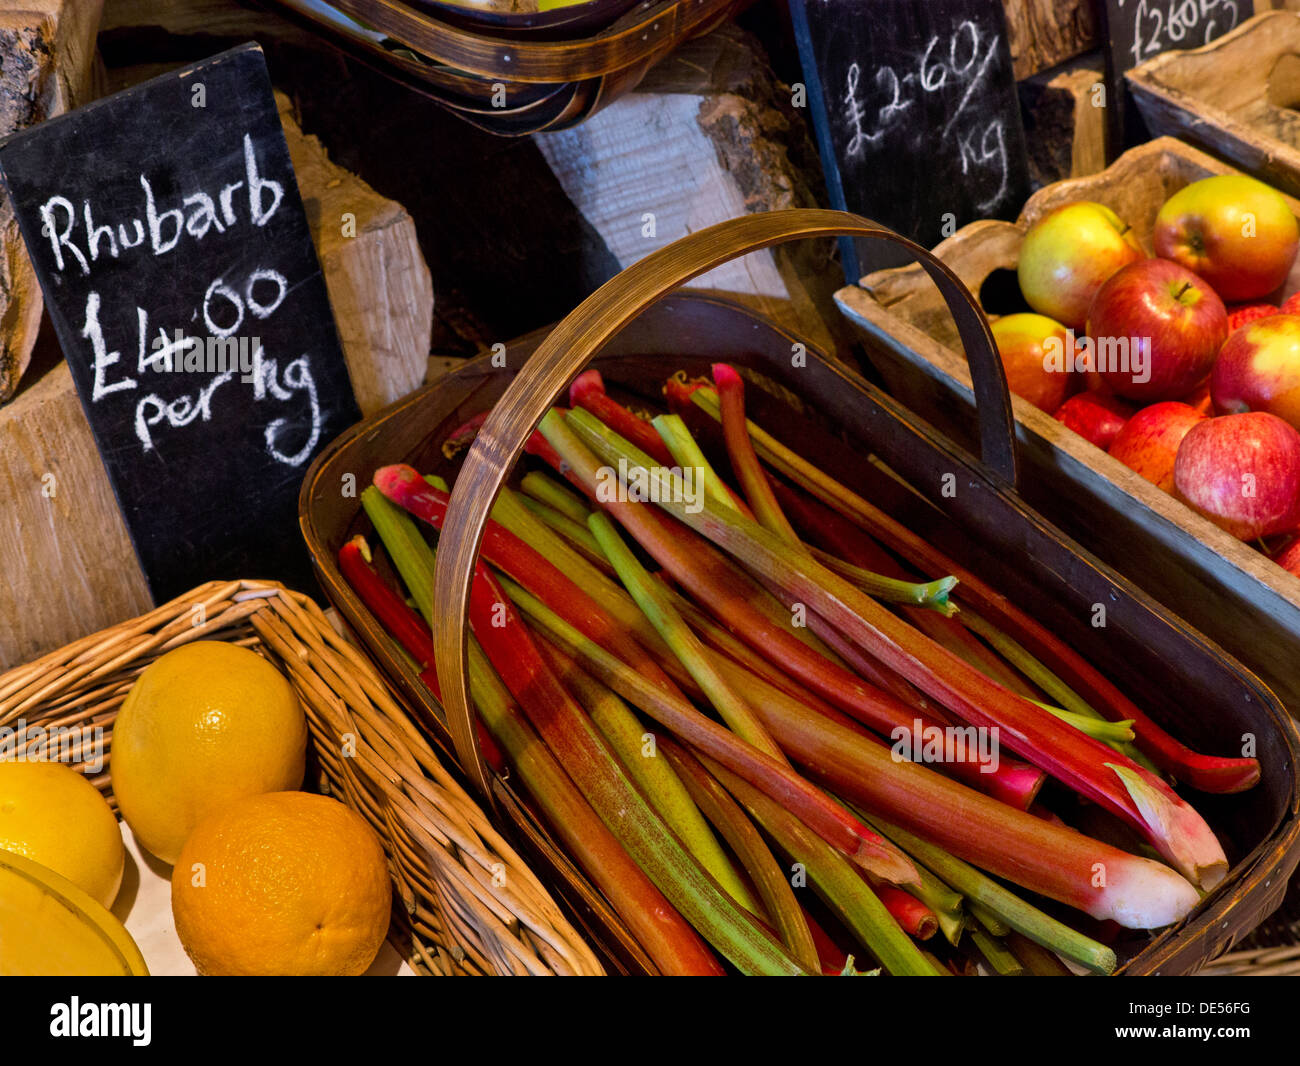 La production rurale traditionnelle farm shop intérieur avec des produits locaux frais et des fruits à la rhubarbe vente UK Cotswolds Banque D'Images